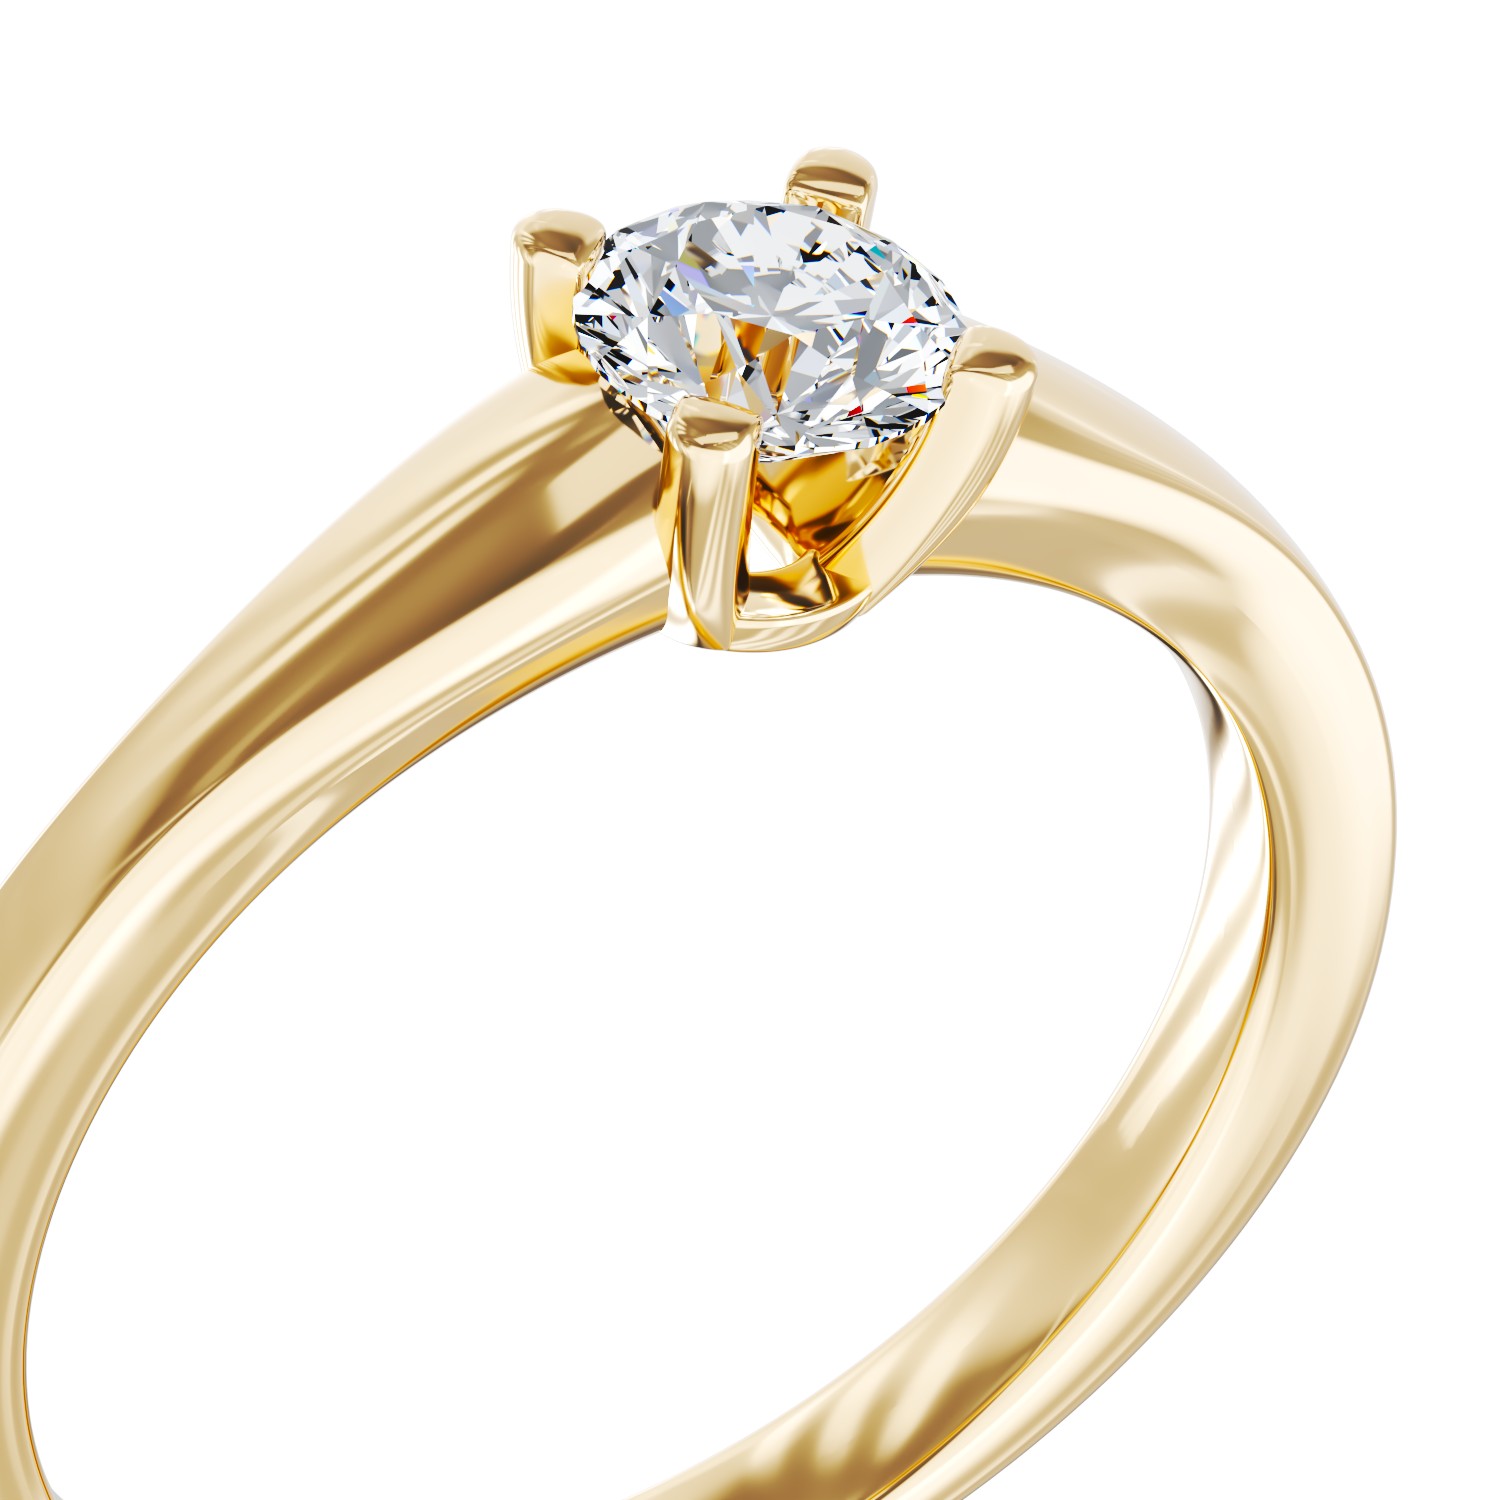 Eljegyzési gyűrű 18K-os sárga aranyból 0,24ct gyémánttal. Gramm: 2,50